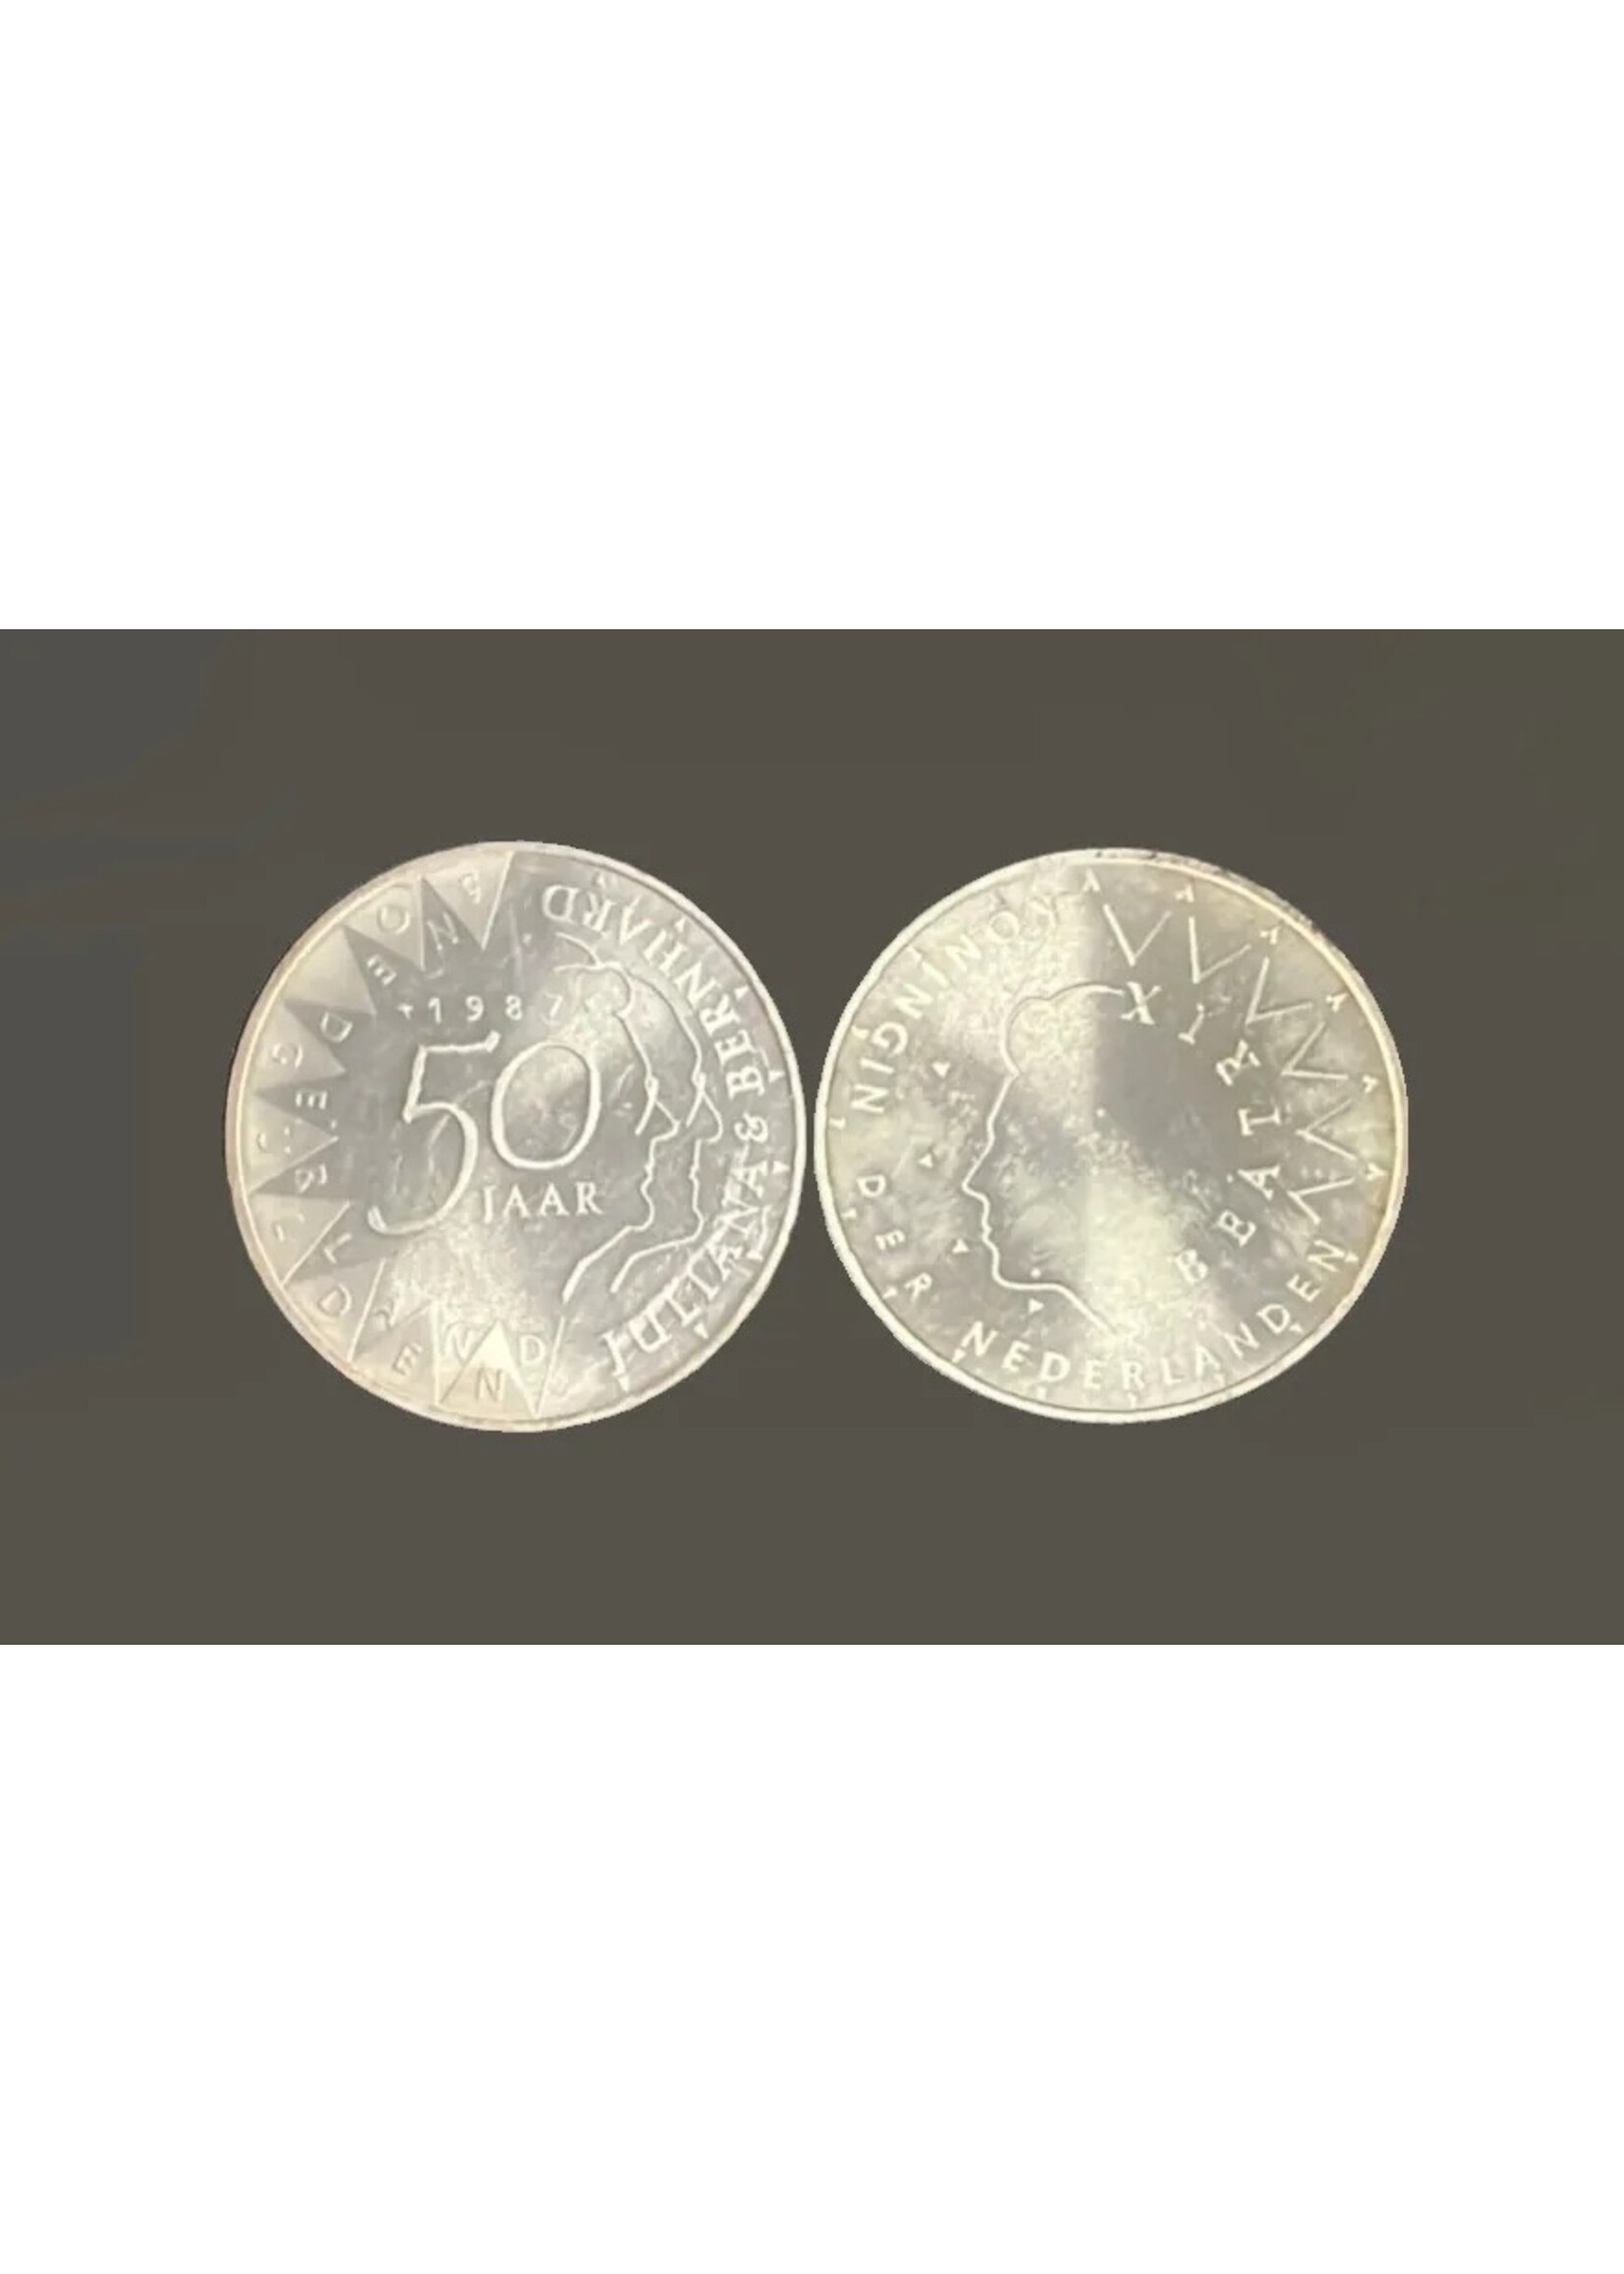 henk coins Netherlands 50 gulden , 50th anniversary - wedding of Queen Juliana and Prince Bernard 1987